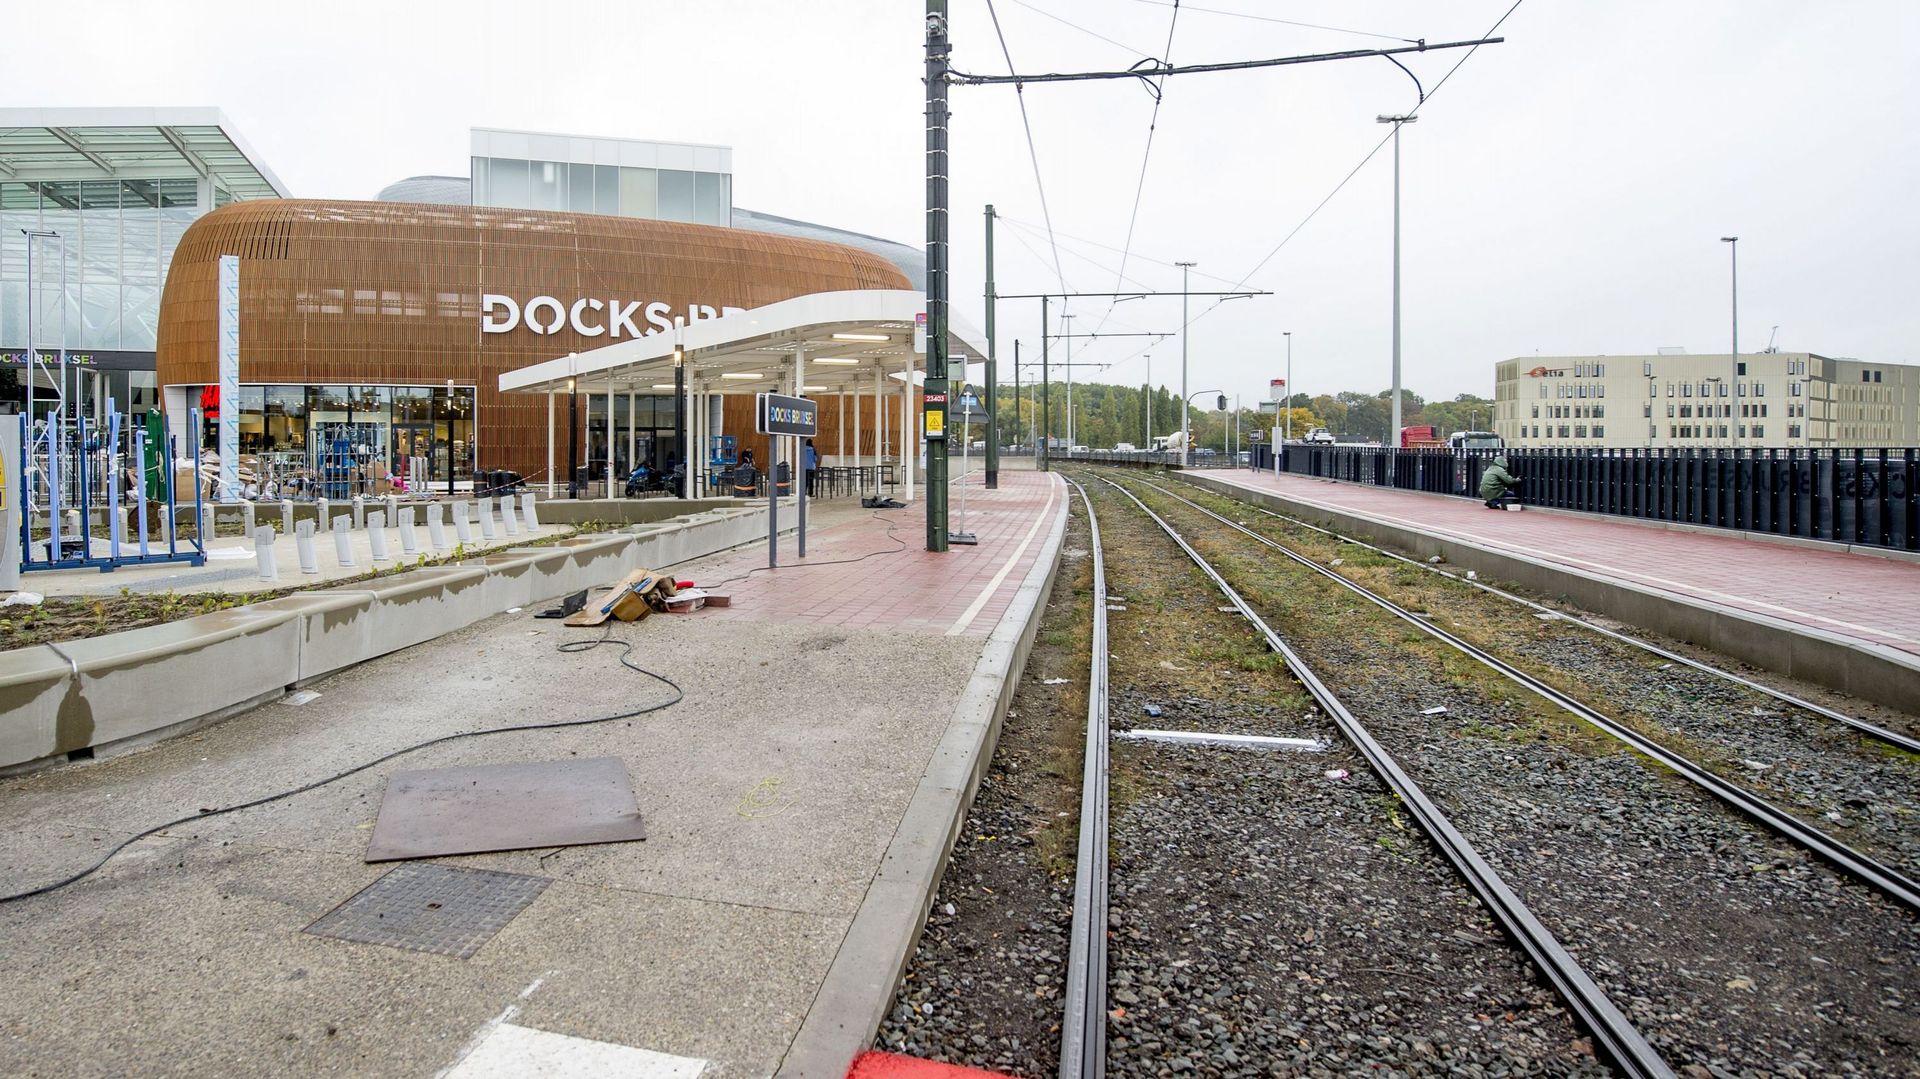 Le conducteur d’une trottinette électrique percuté mortellement par un tram près de Docks Bruxsel